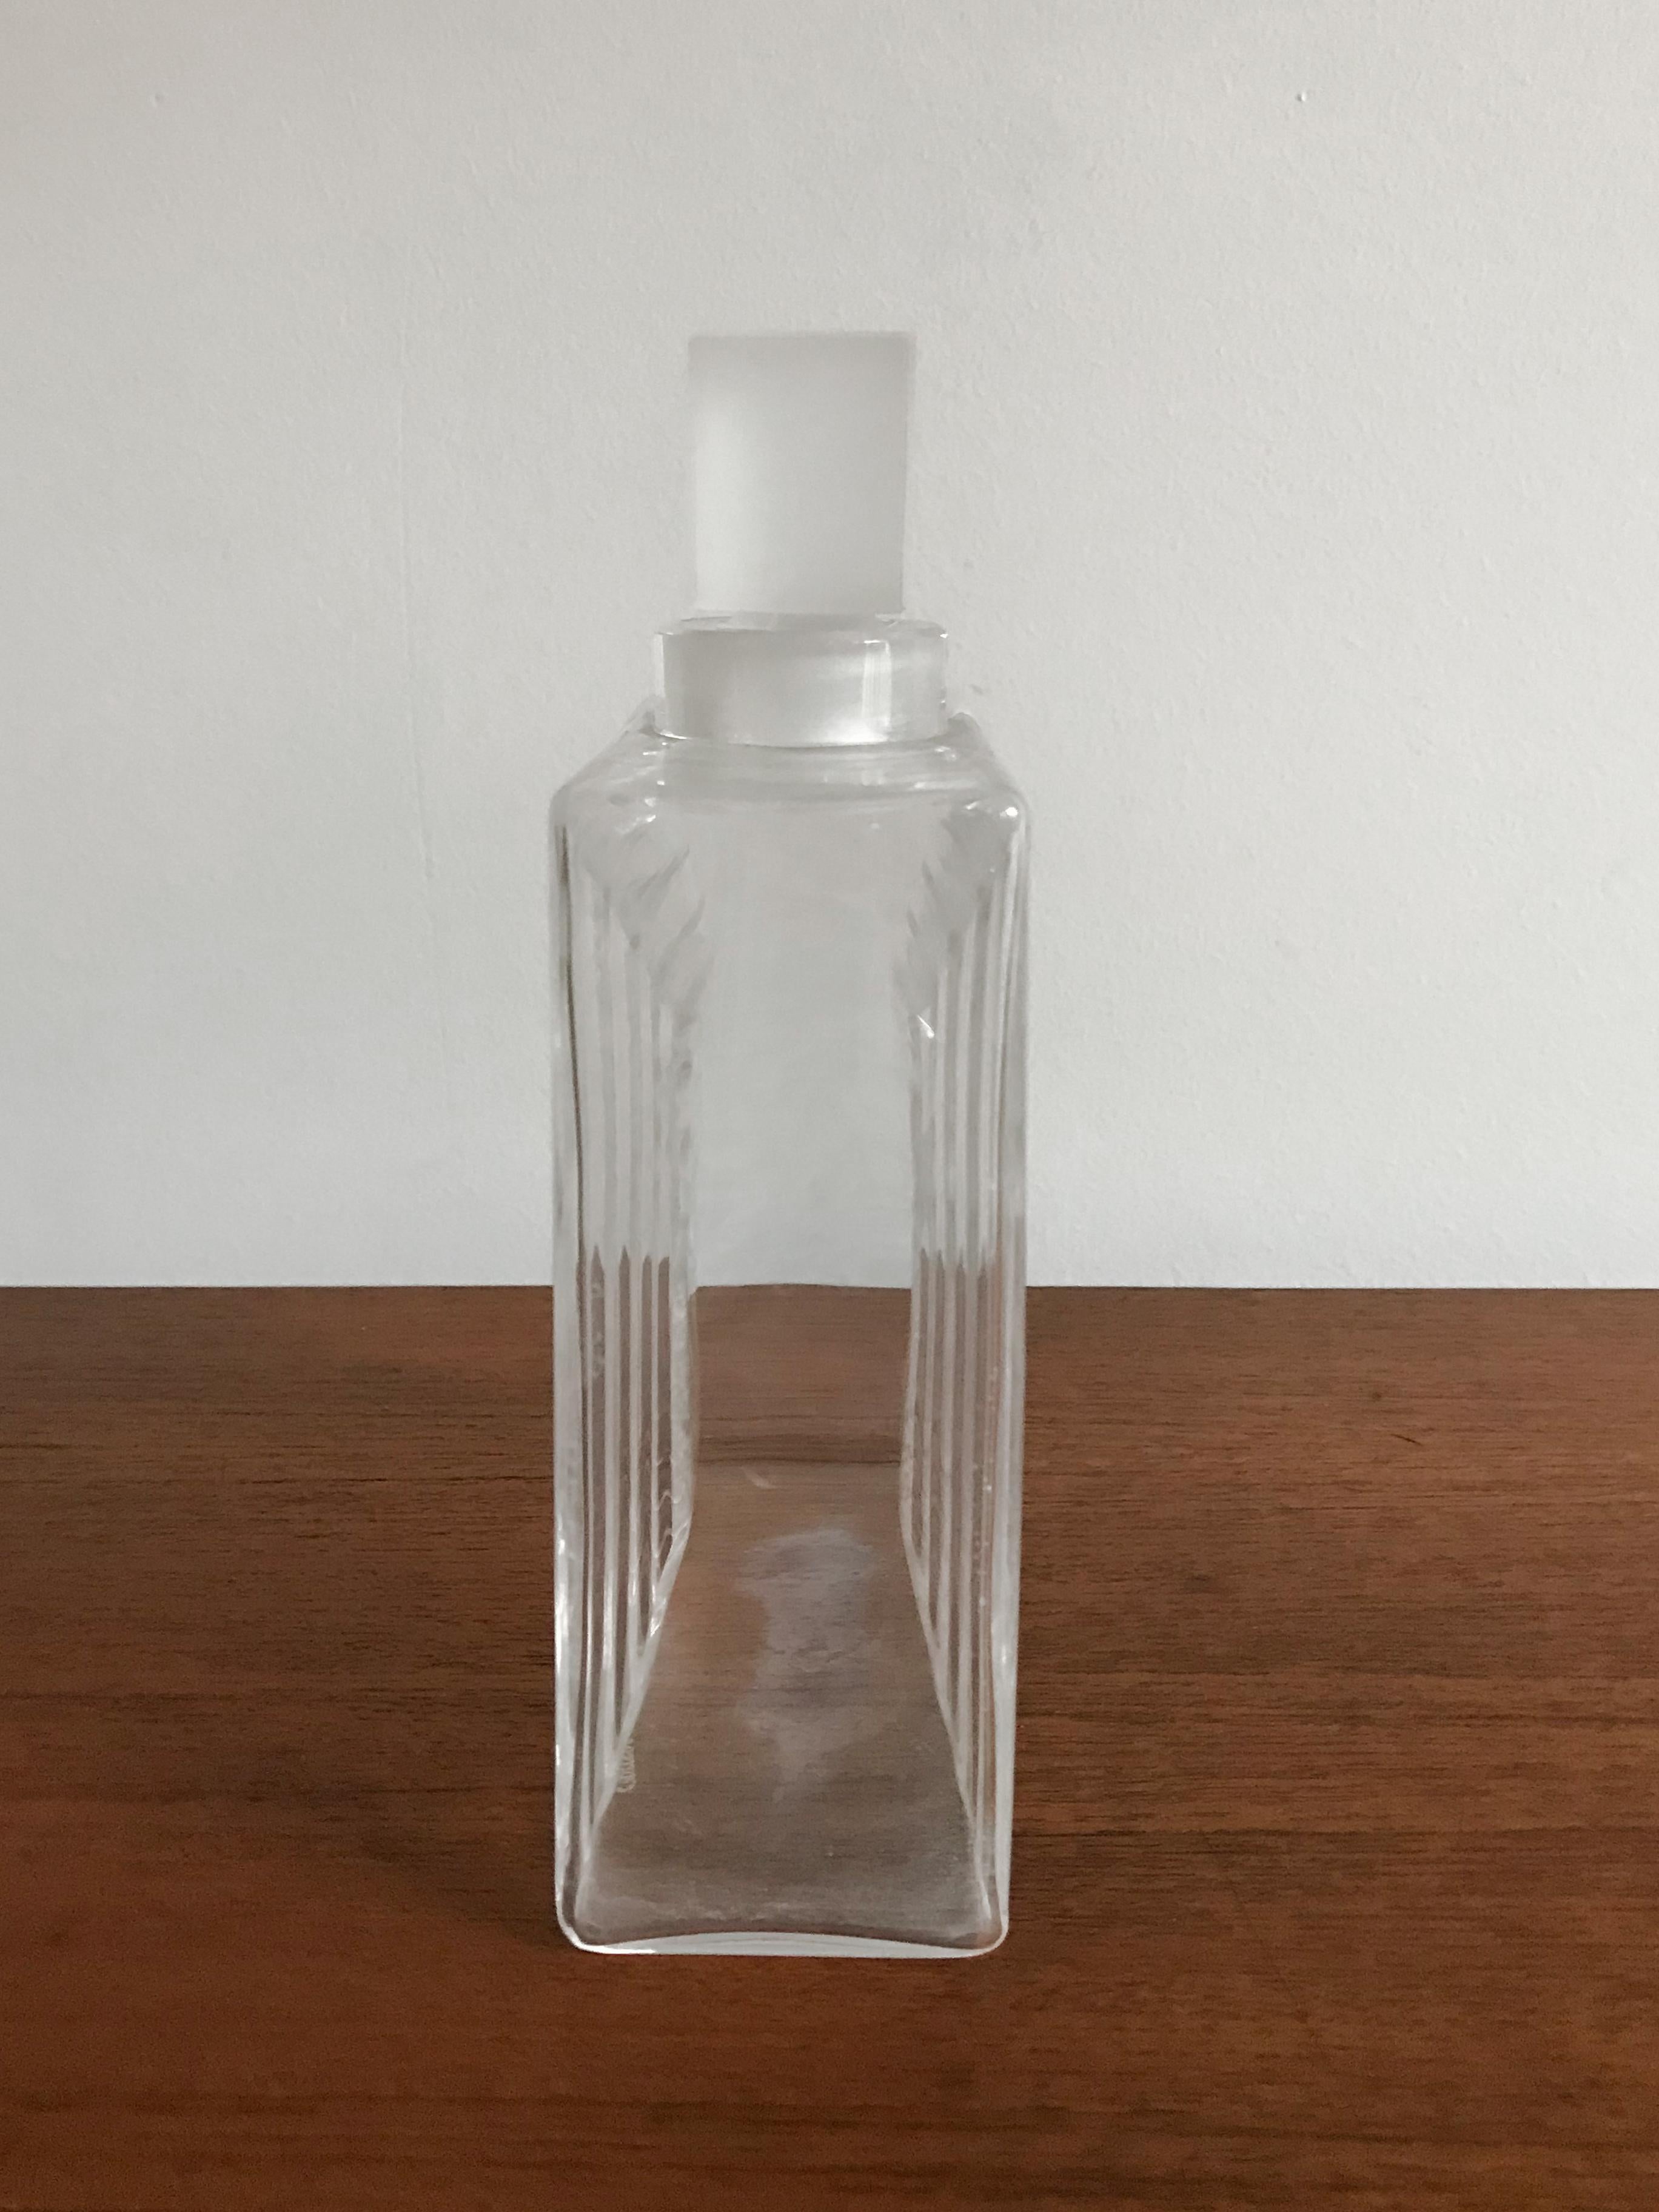 1970s perfume bottles